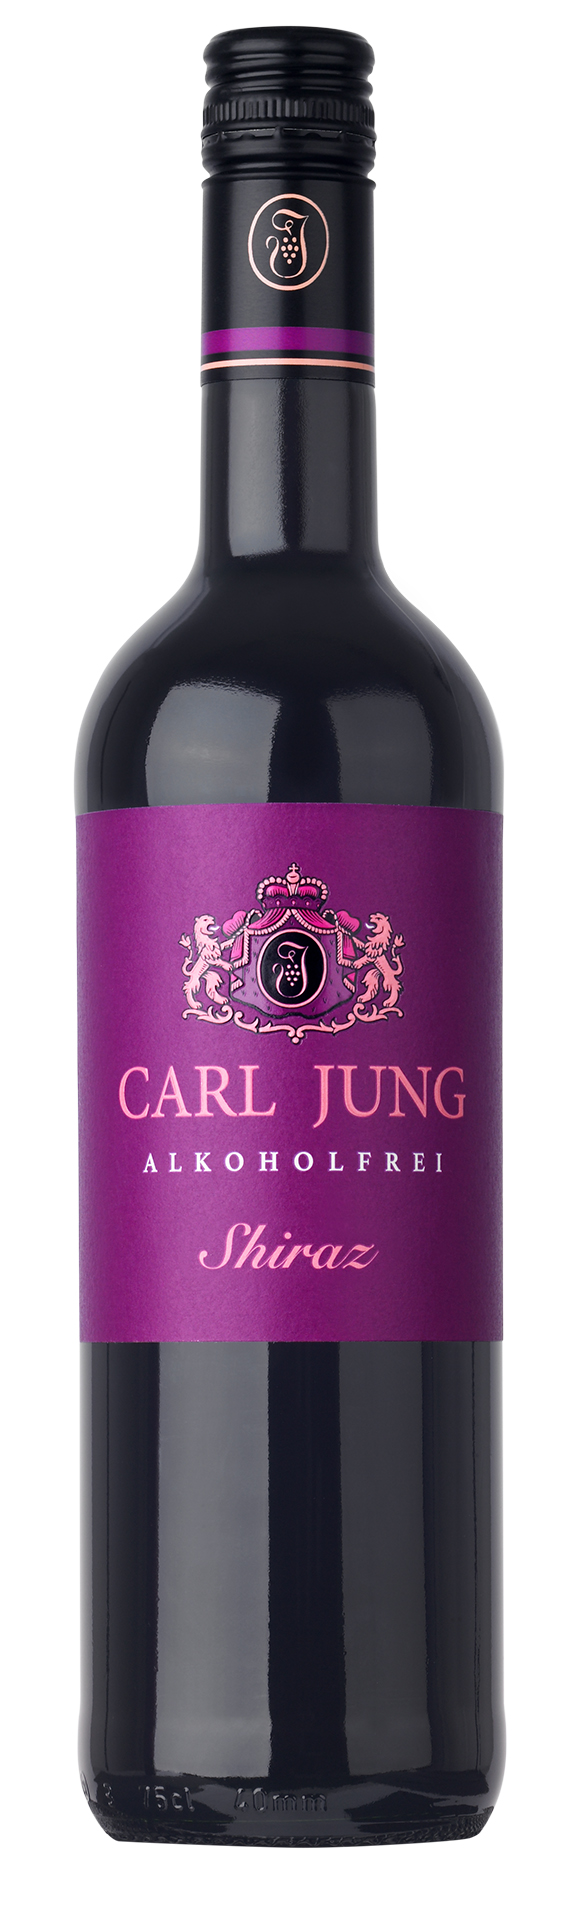 Carl Jung Shiraz 0,75l  - alkoholfreier Rotwein